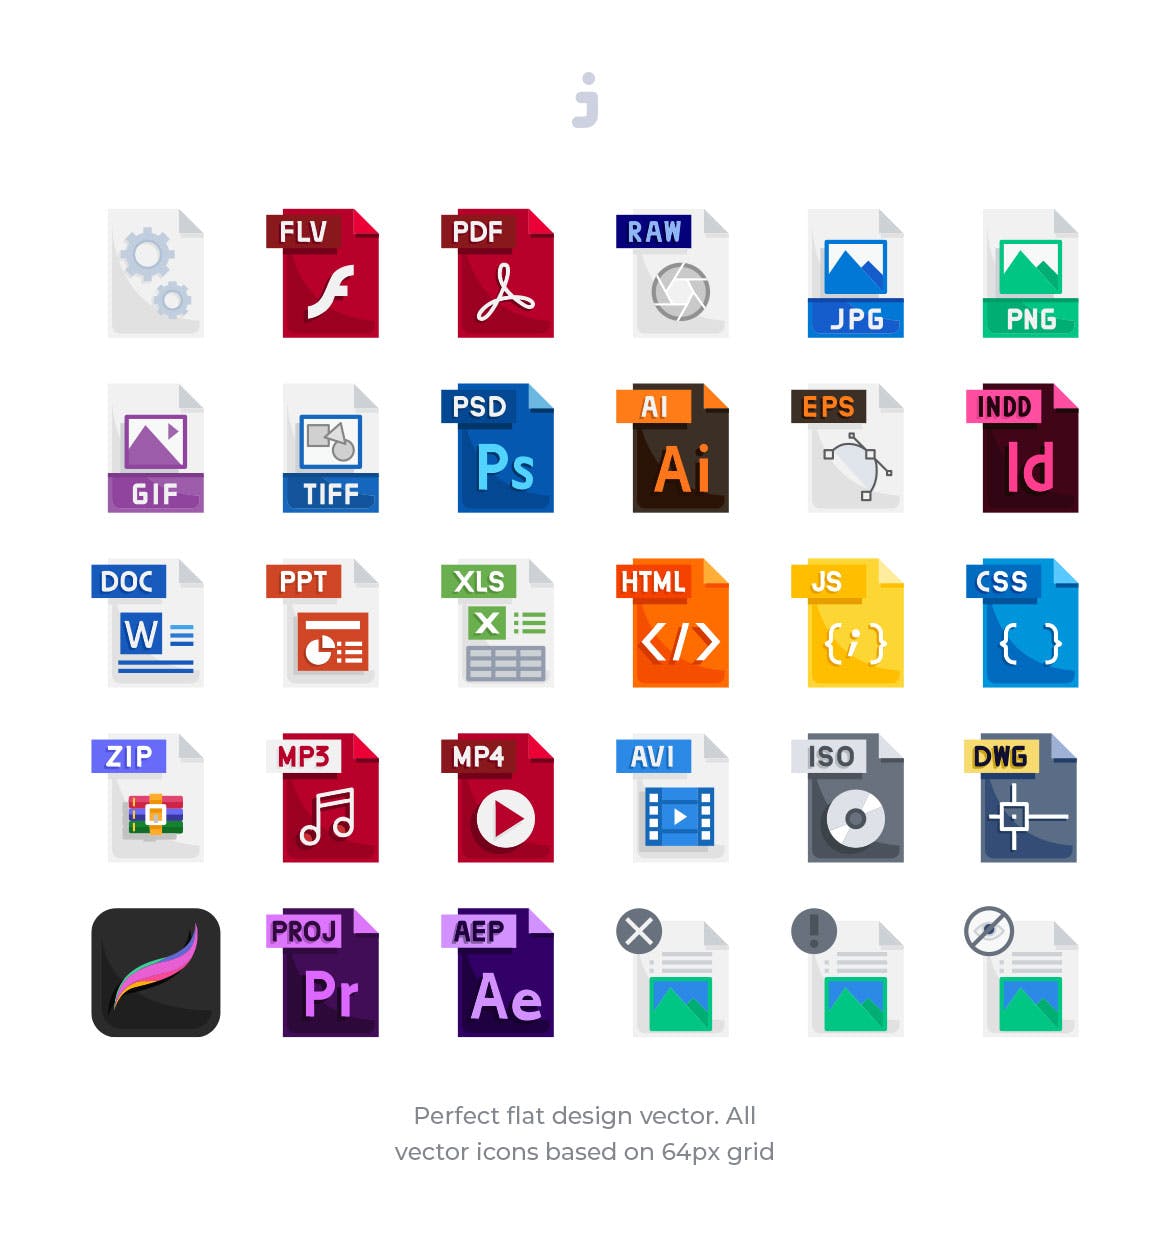 30种文件格式扁平设计风格第一素材精选图标 30 File Types Icons – Flat插图(1)